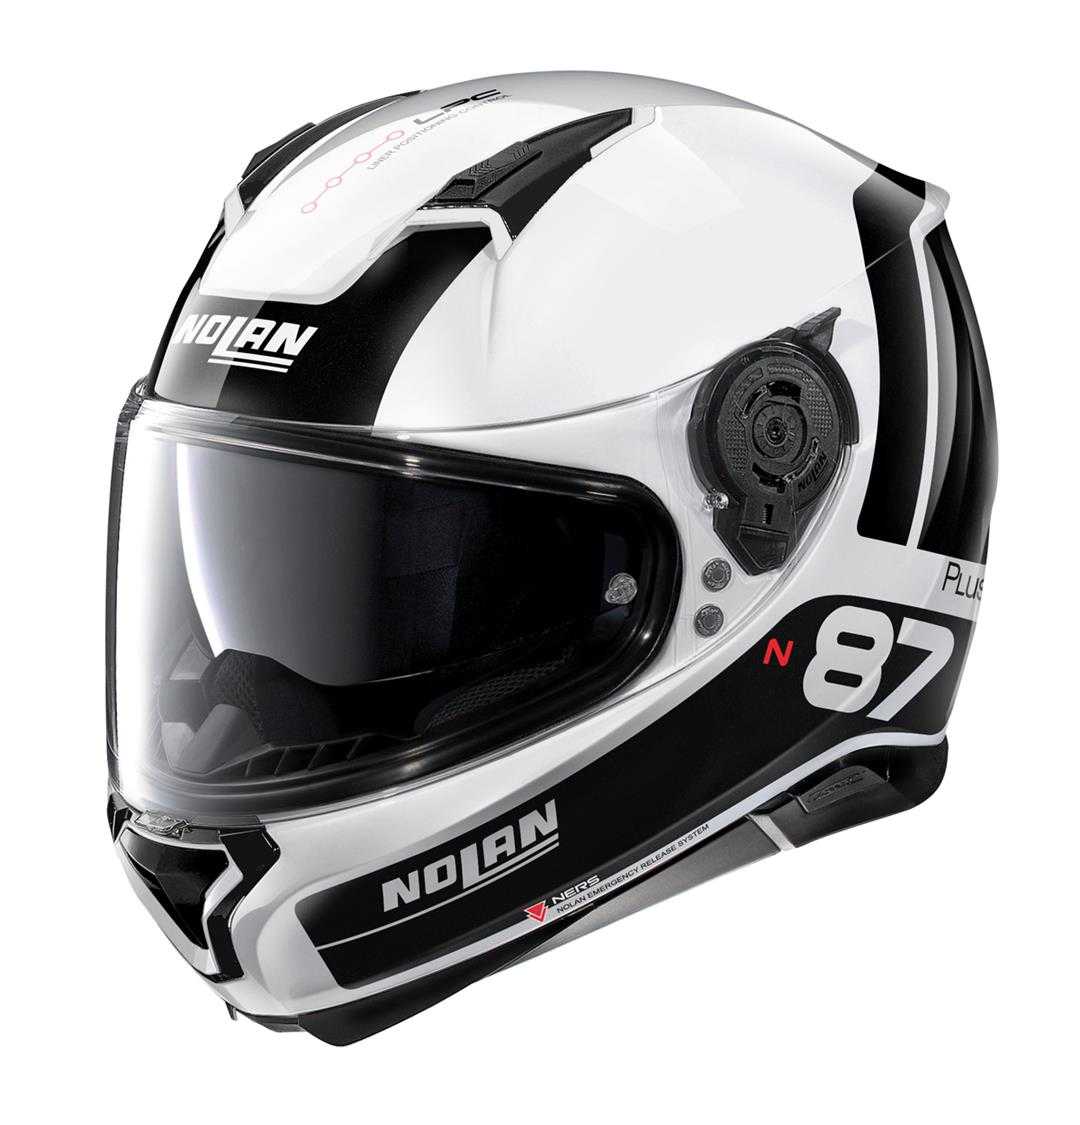 NOLAN, Nolan N87 Plus Full Face Helmet - white/black